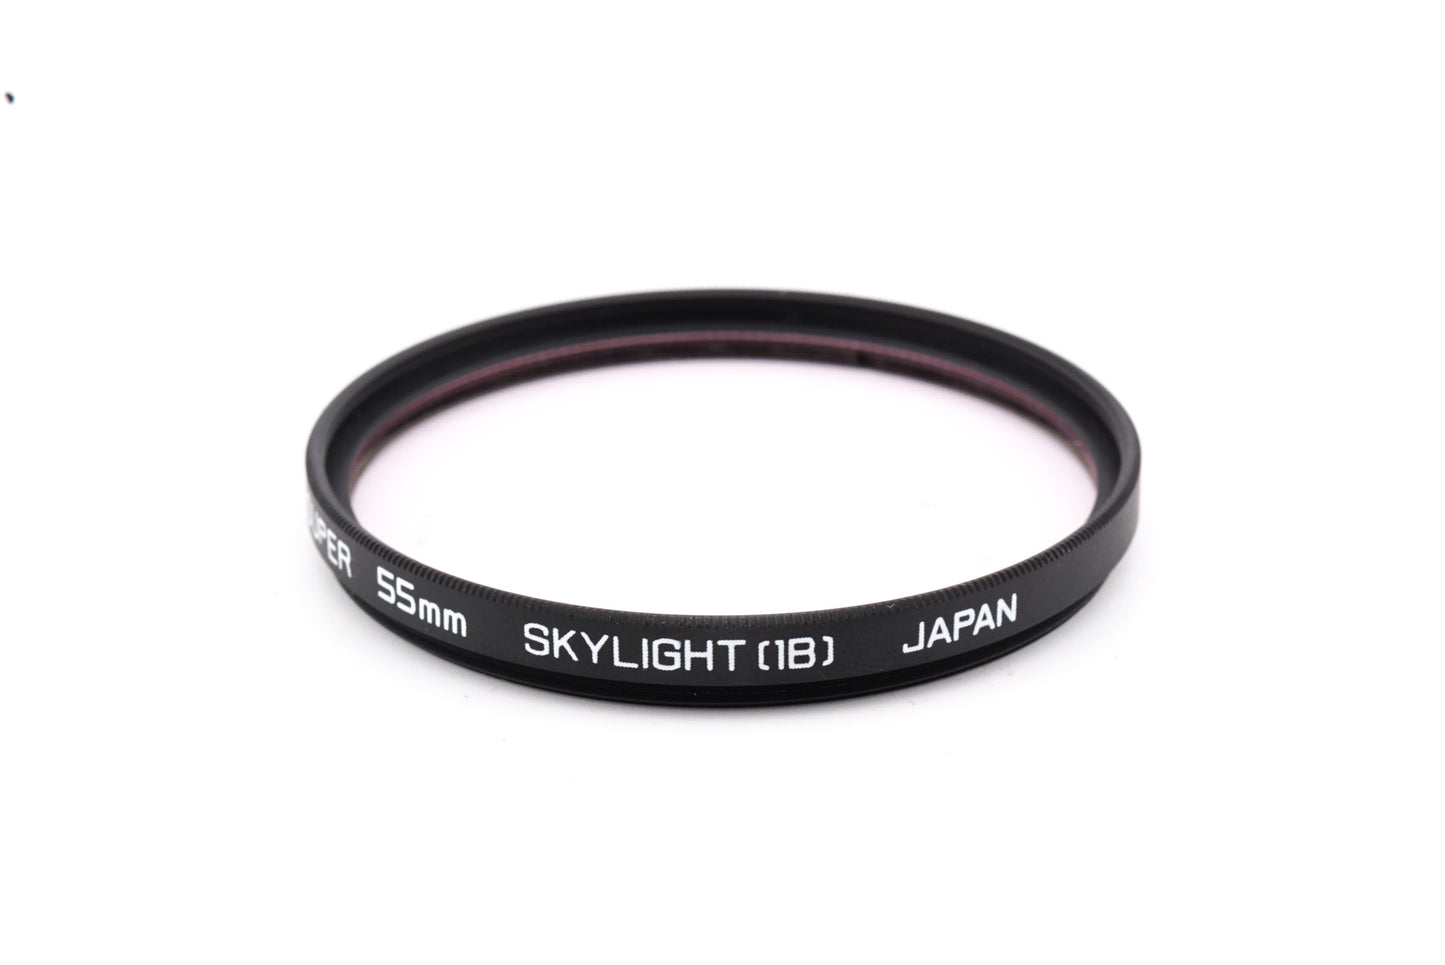 Hoya 55mm Skylight Filter 1B - Accessory